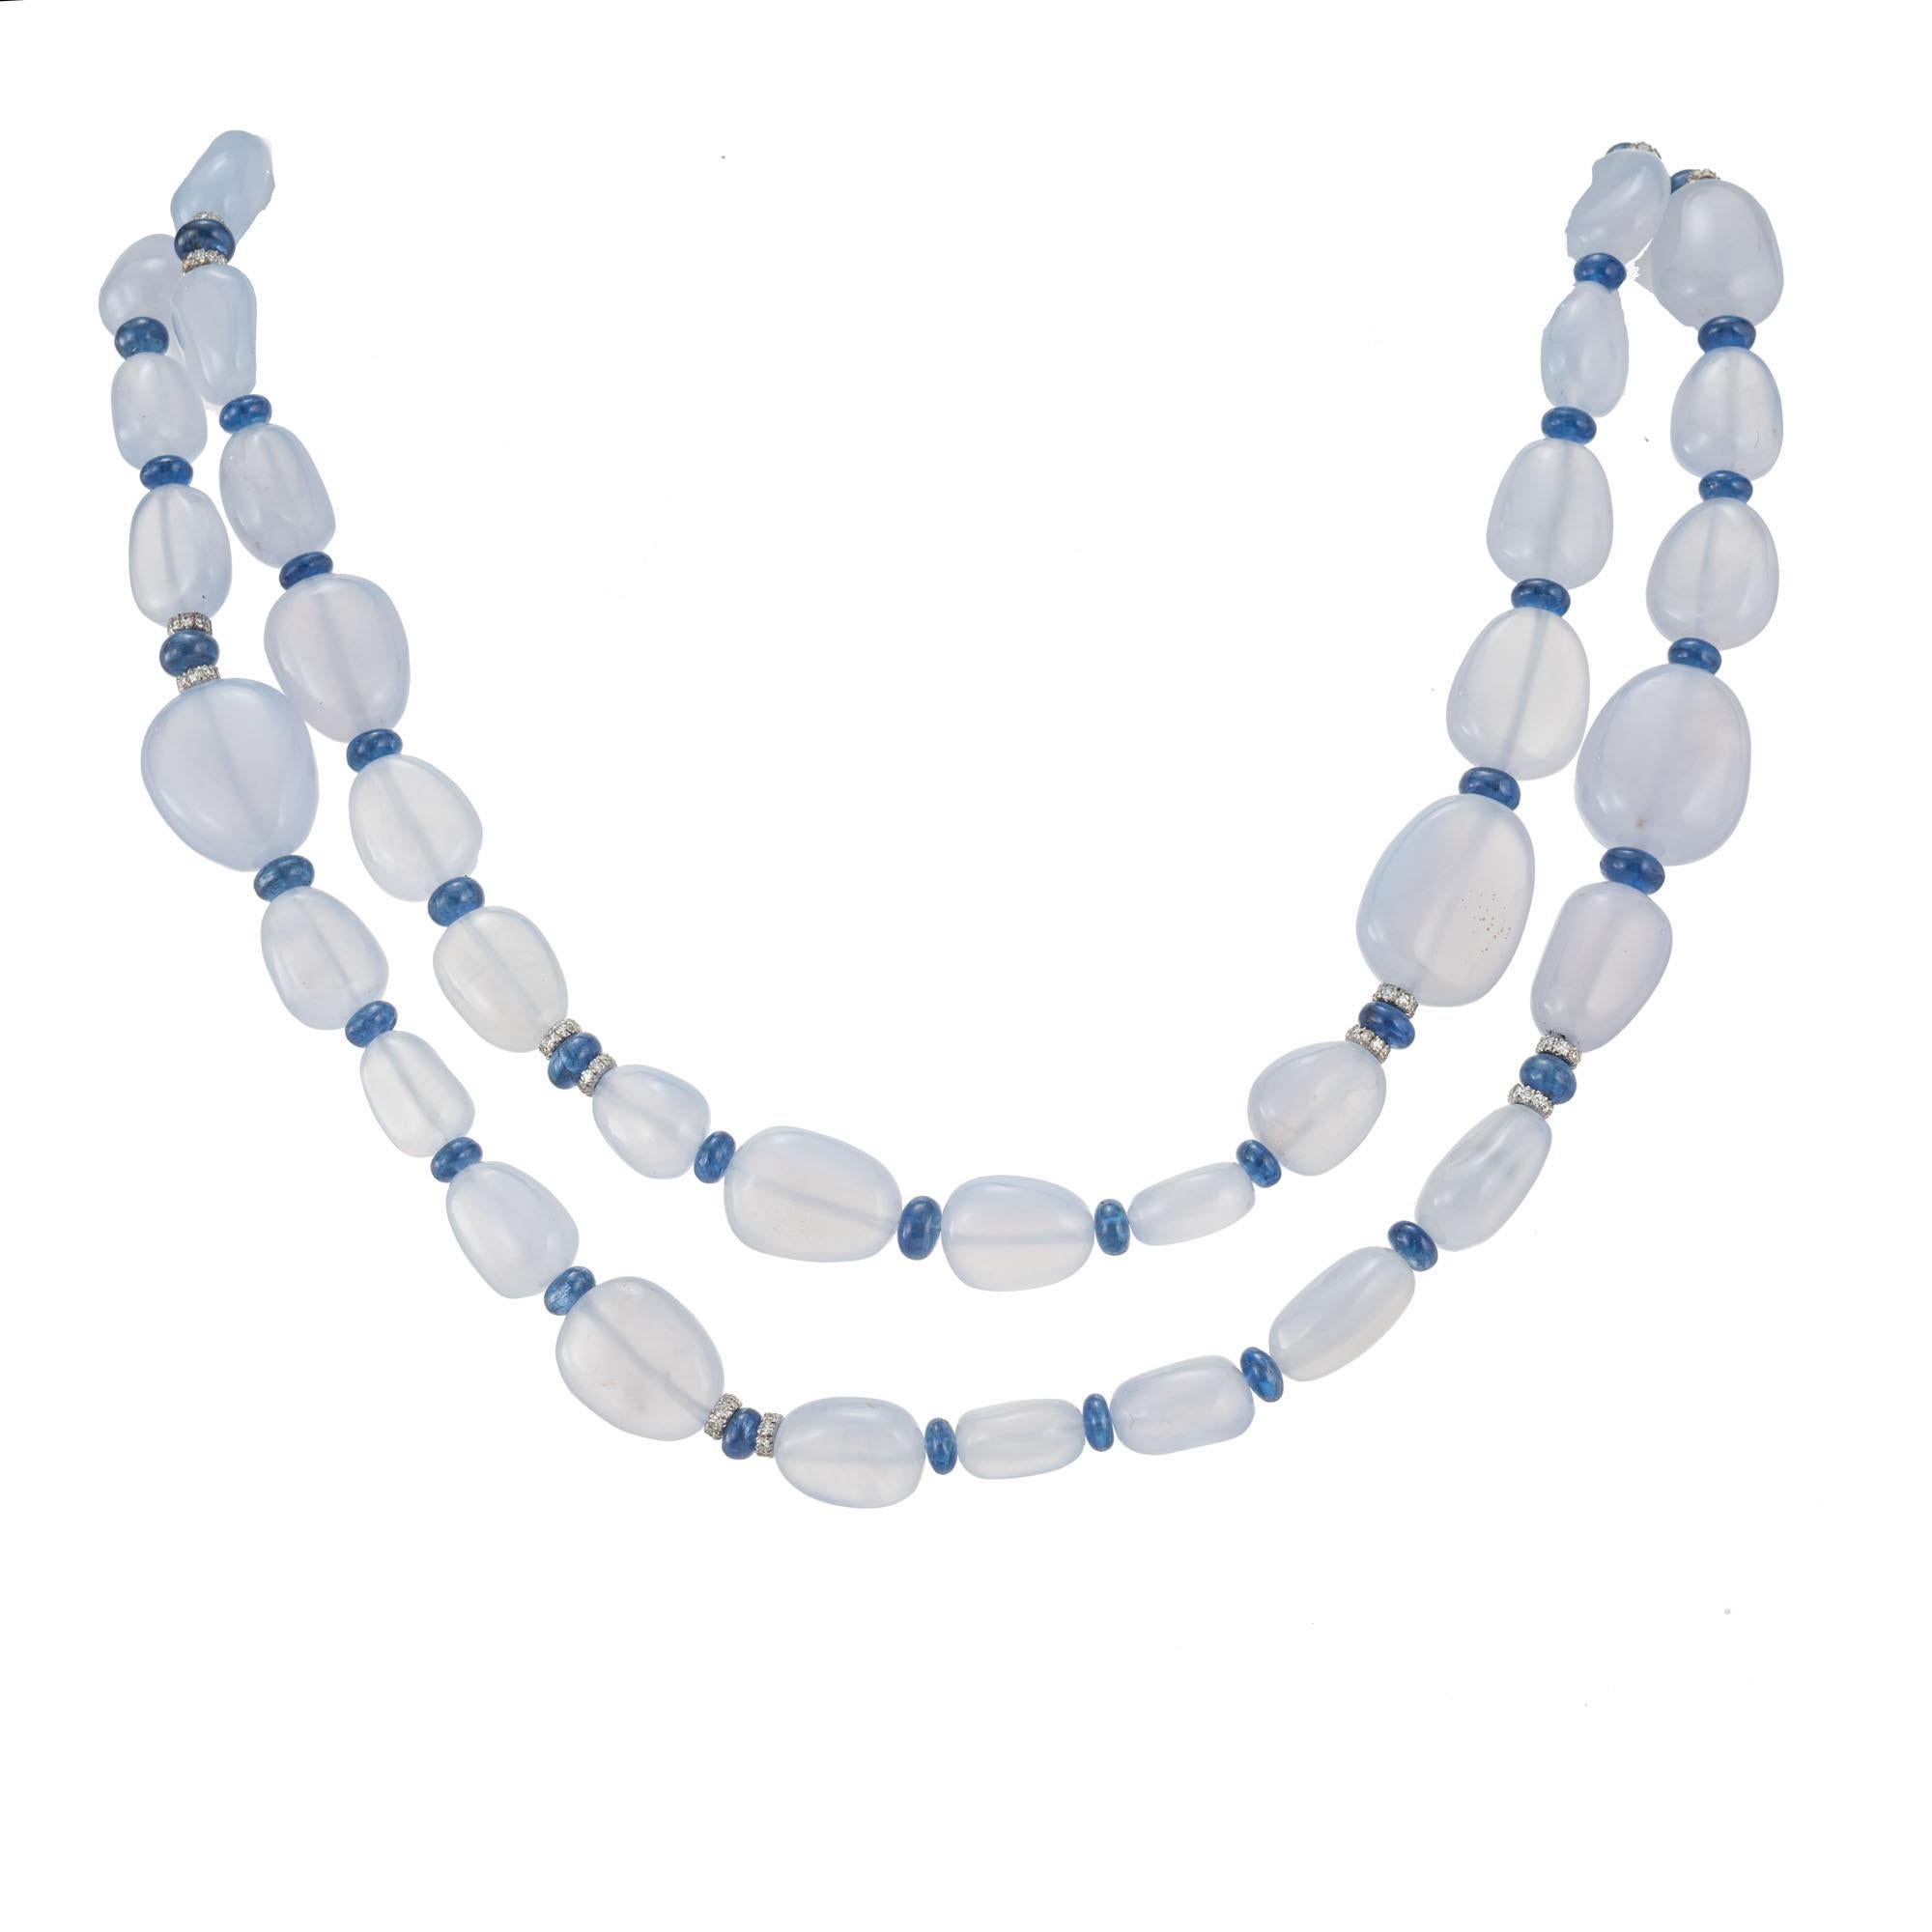 Collier de perles translucides en calcédoine bleue naturelle avec des rondelles d'écartement en saphir bleu véritable et une rondelle en diamant en or blanc 18k avec une attache en diamant en or blanc 18k. 30 pouces de long. 

50 perles bleu